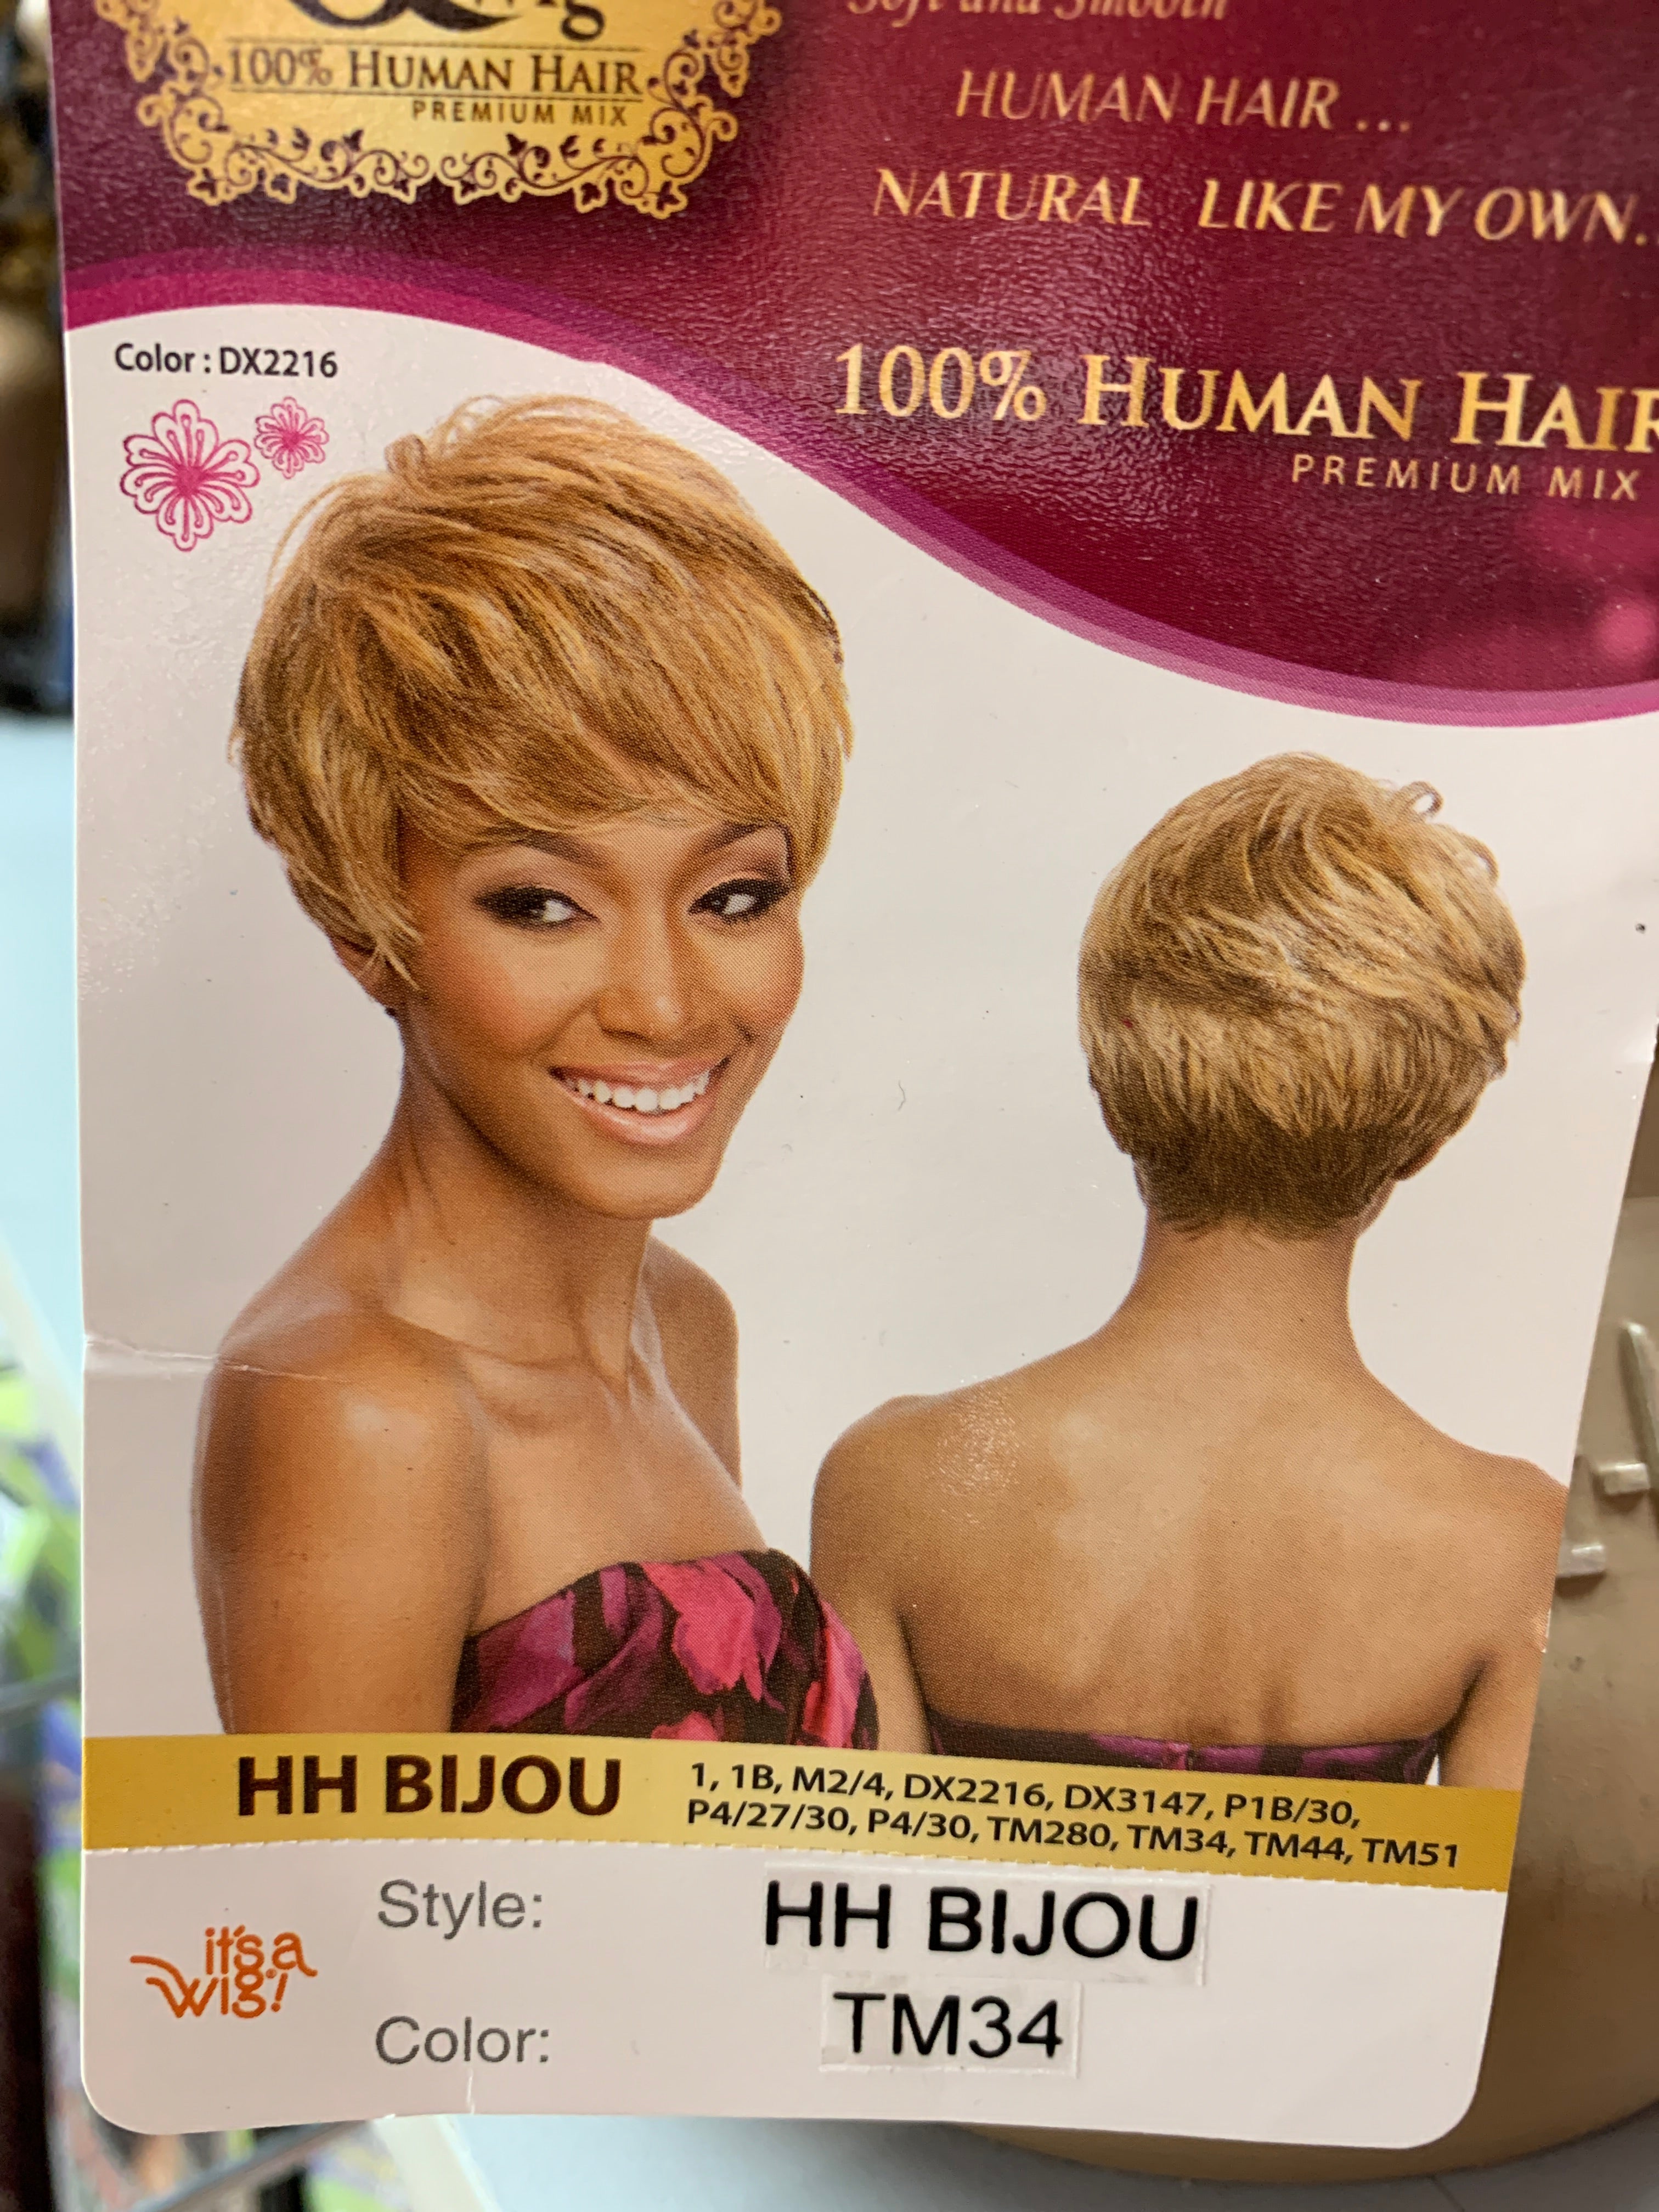 It’s a wig hh Bijou